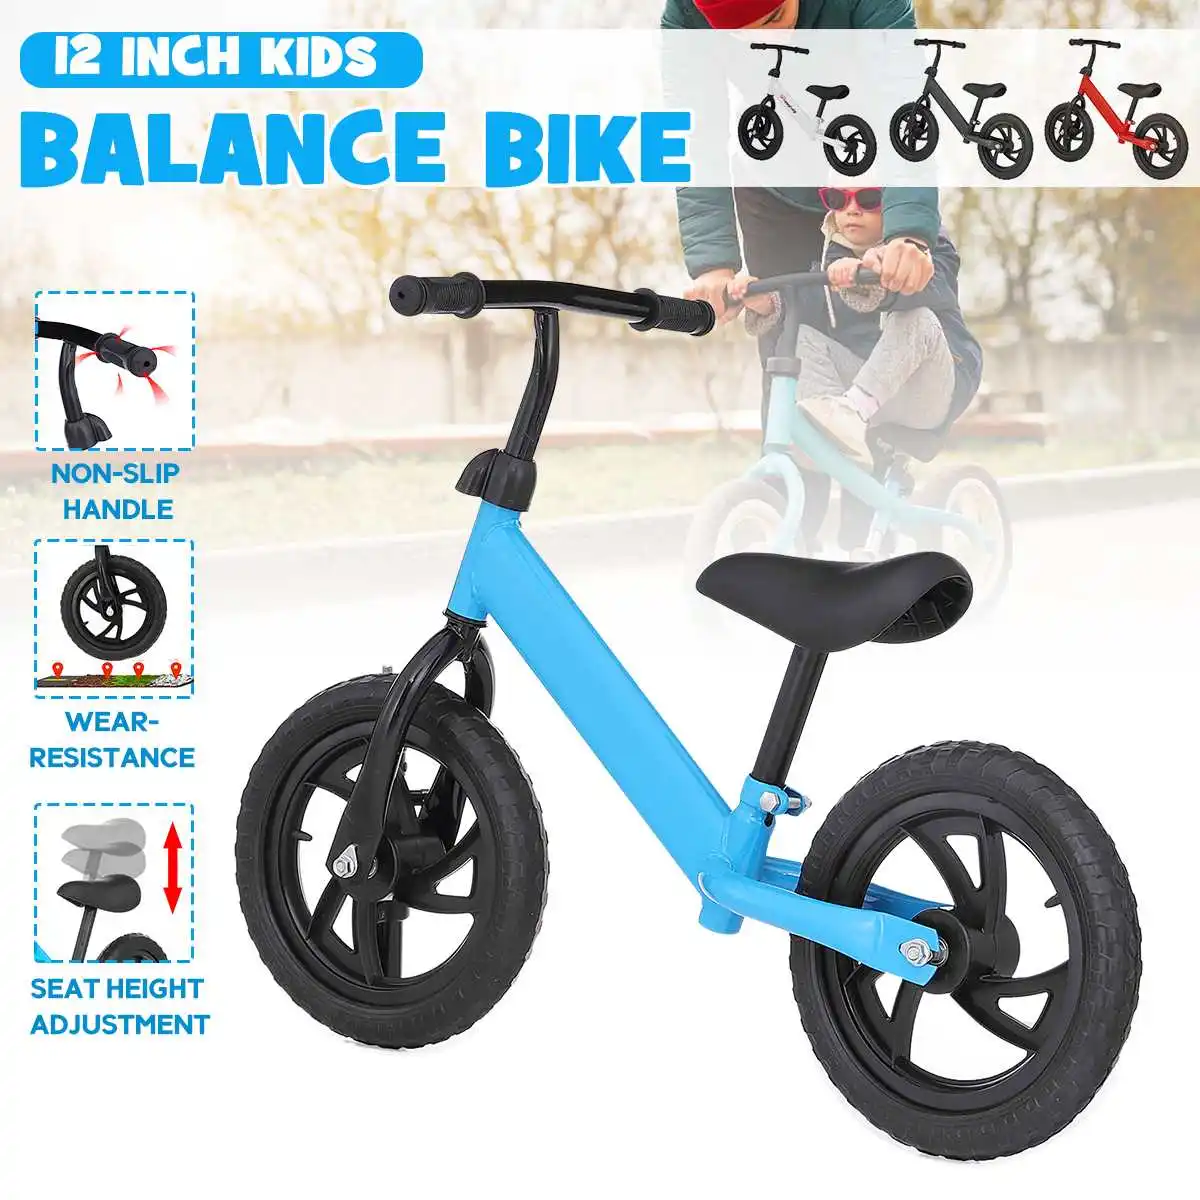 

Детский балансировочный велосипед ходунок, детская игрушка для катания, подарок для детей 2-6 лет, для обучения, двухколесный скутер, без нож...